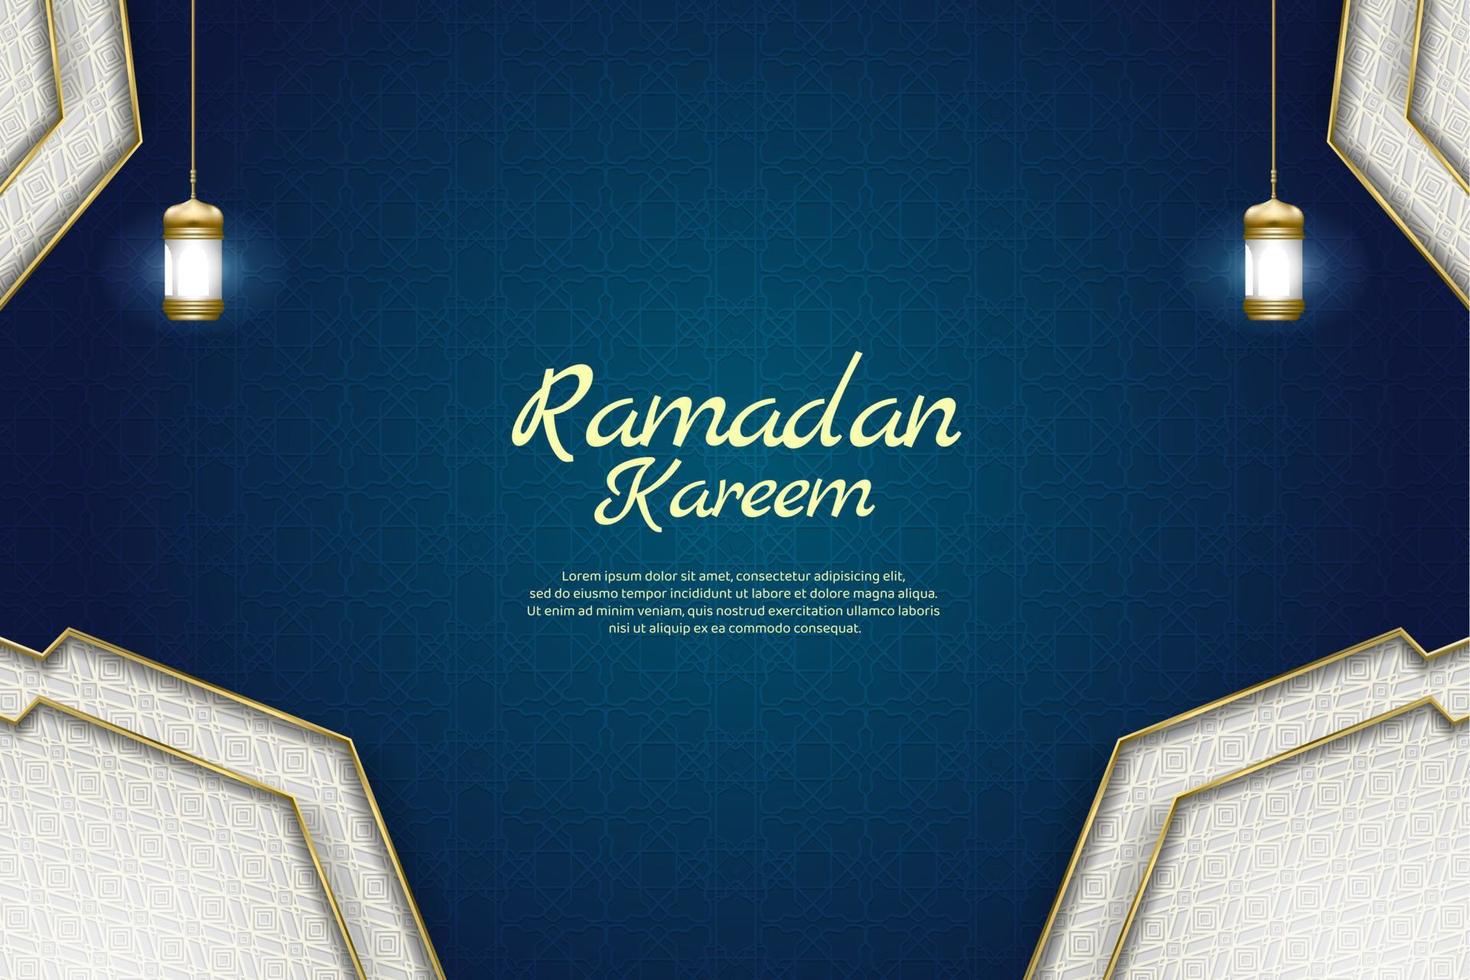 fundo decorativo islâmico de luxo com ilustração vetorial de padrão arabesco vetor